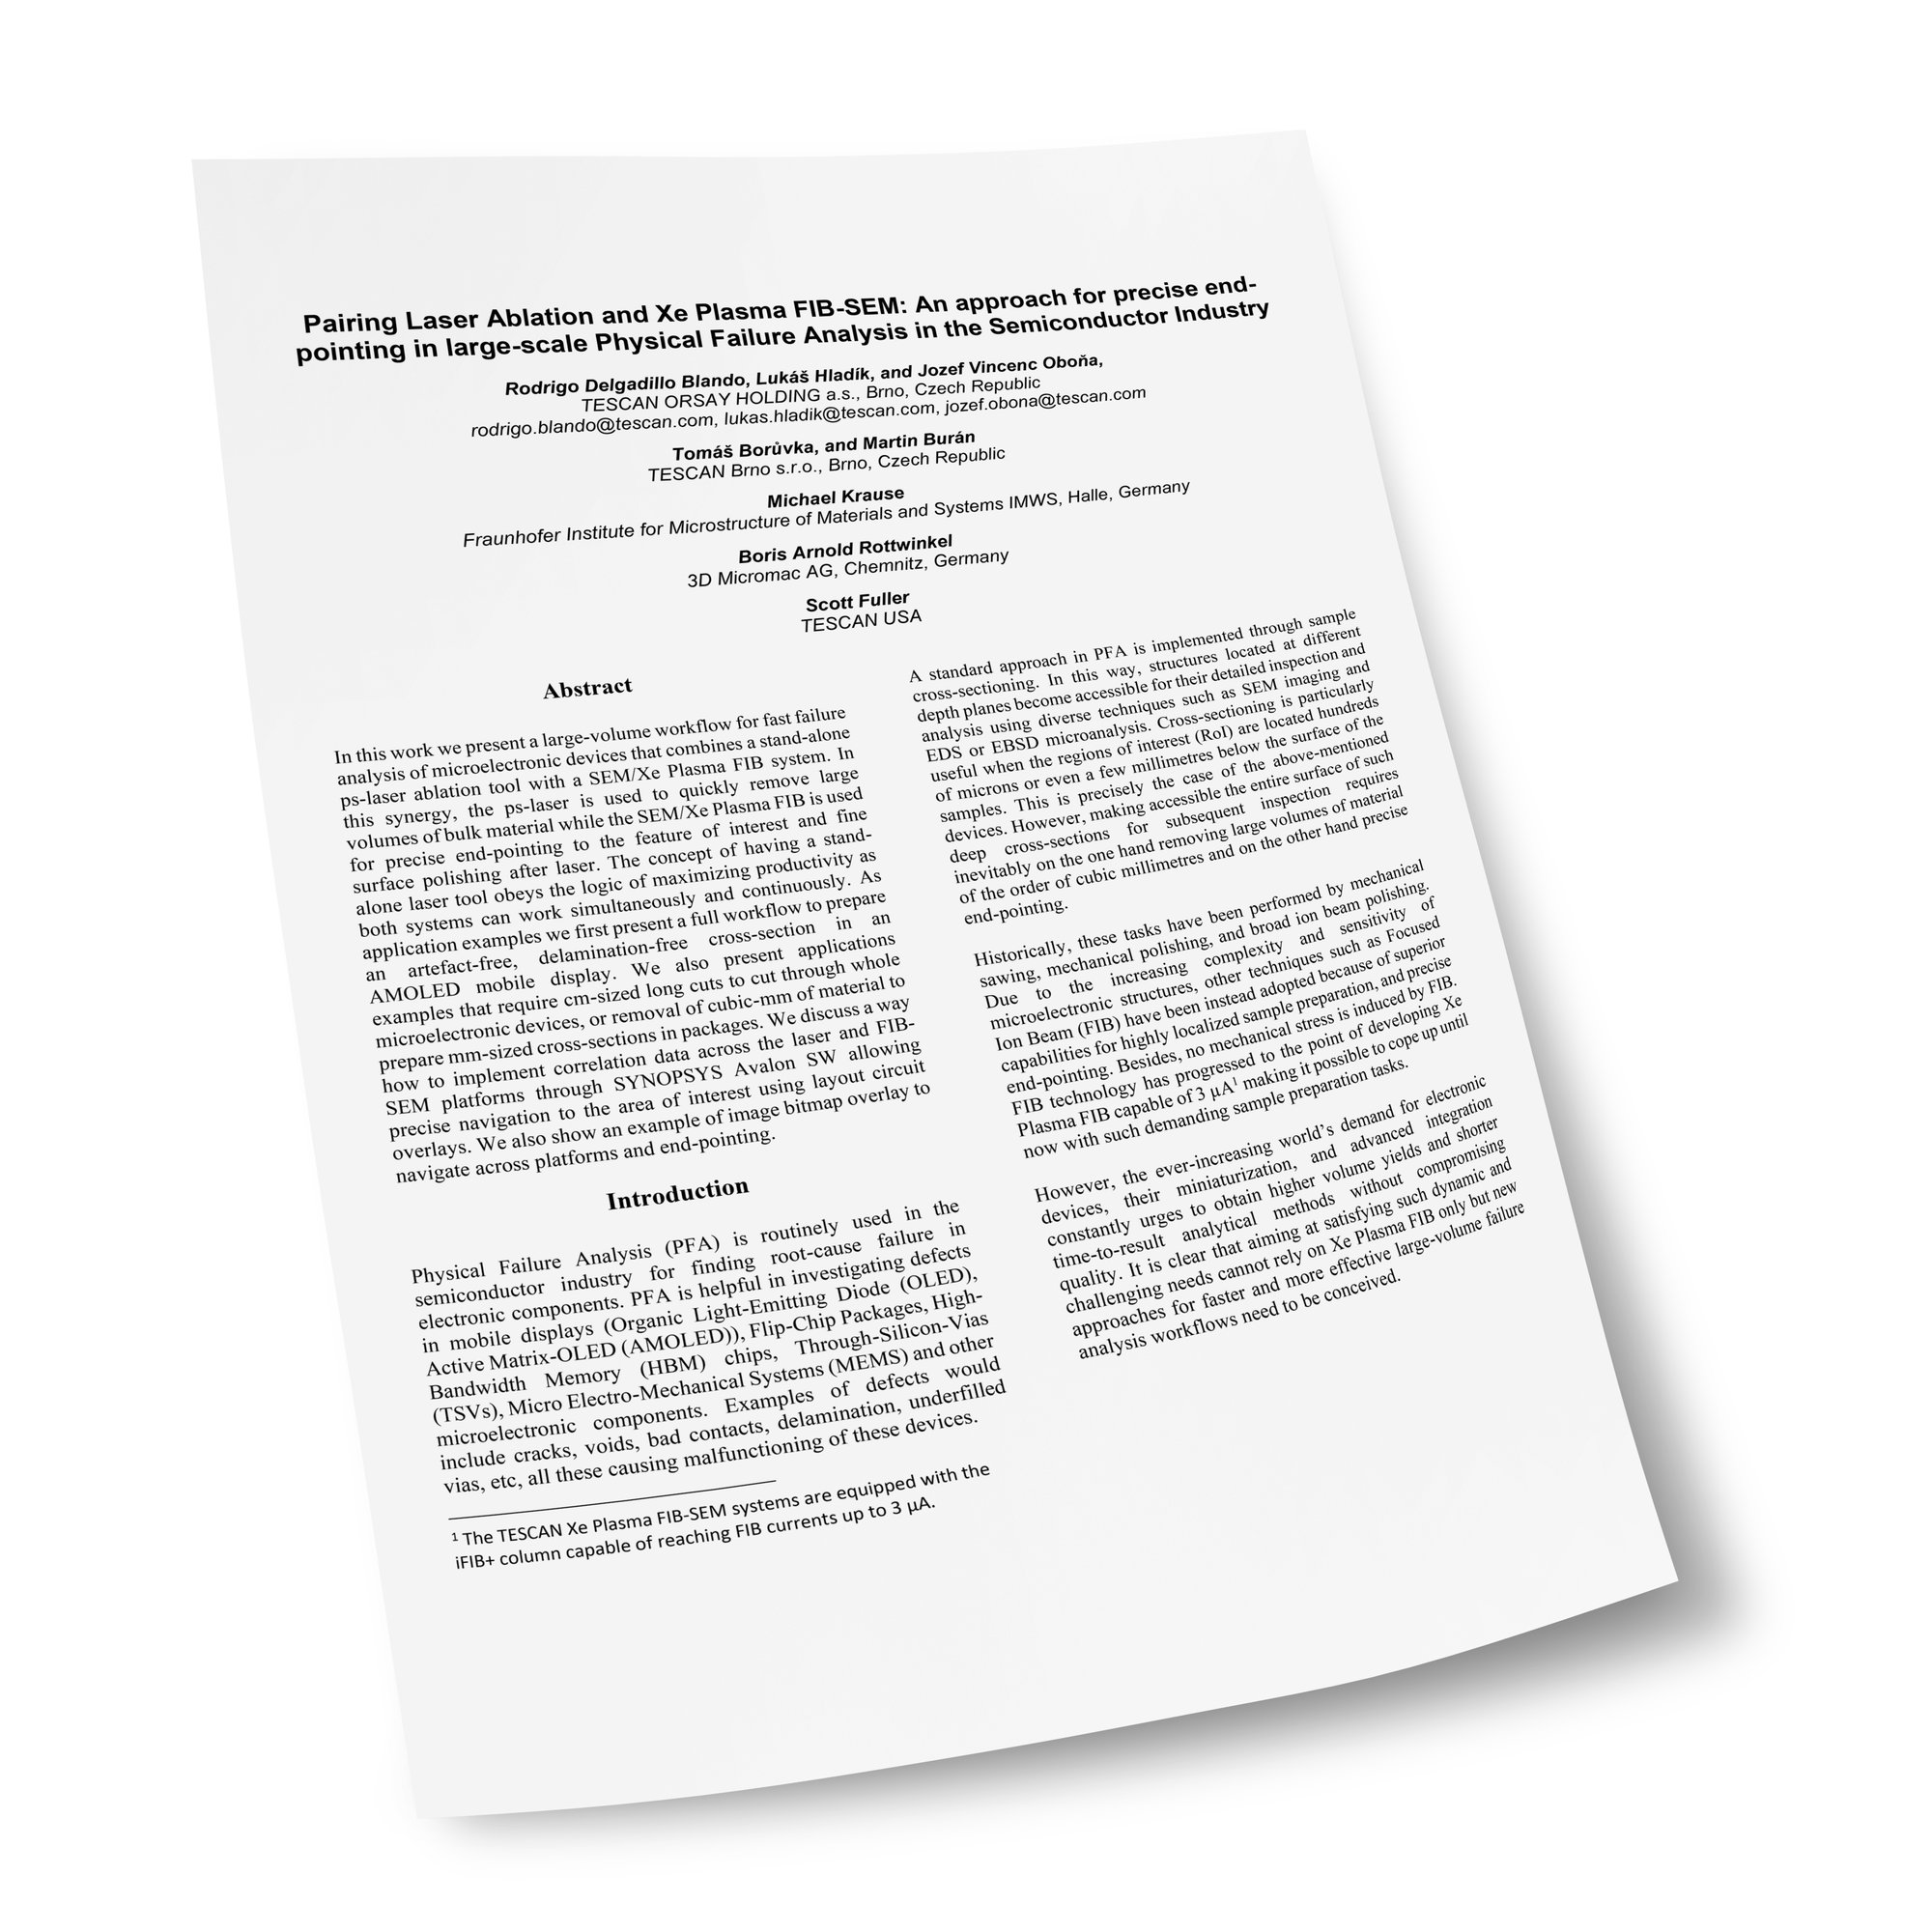 半導体故障解析の最適化に関する科学論文の最初のページ。